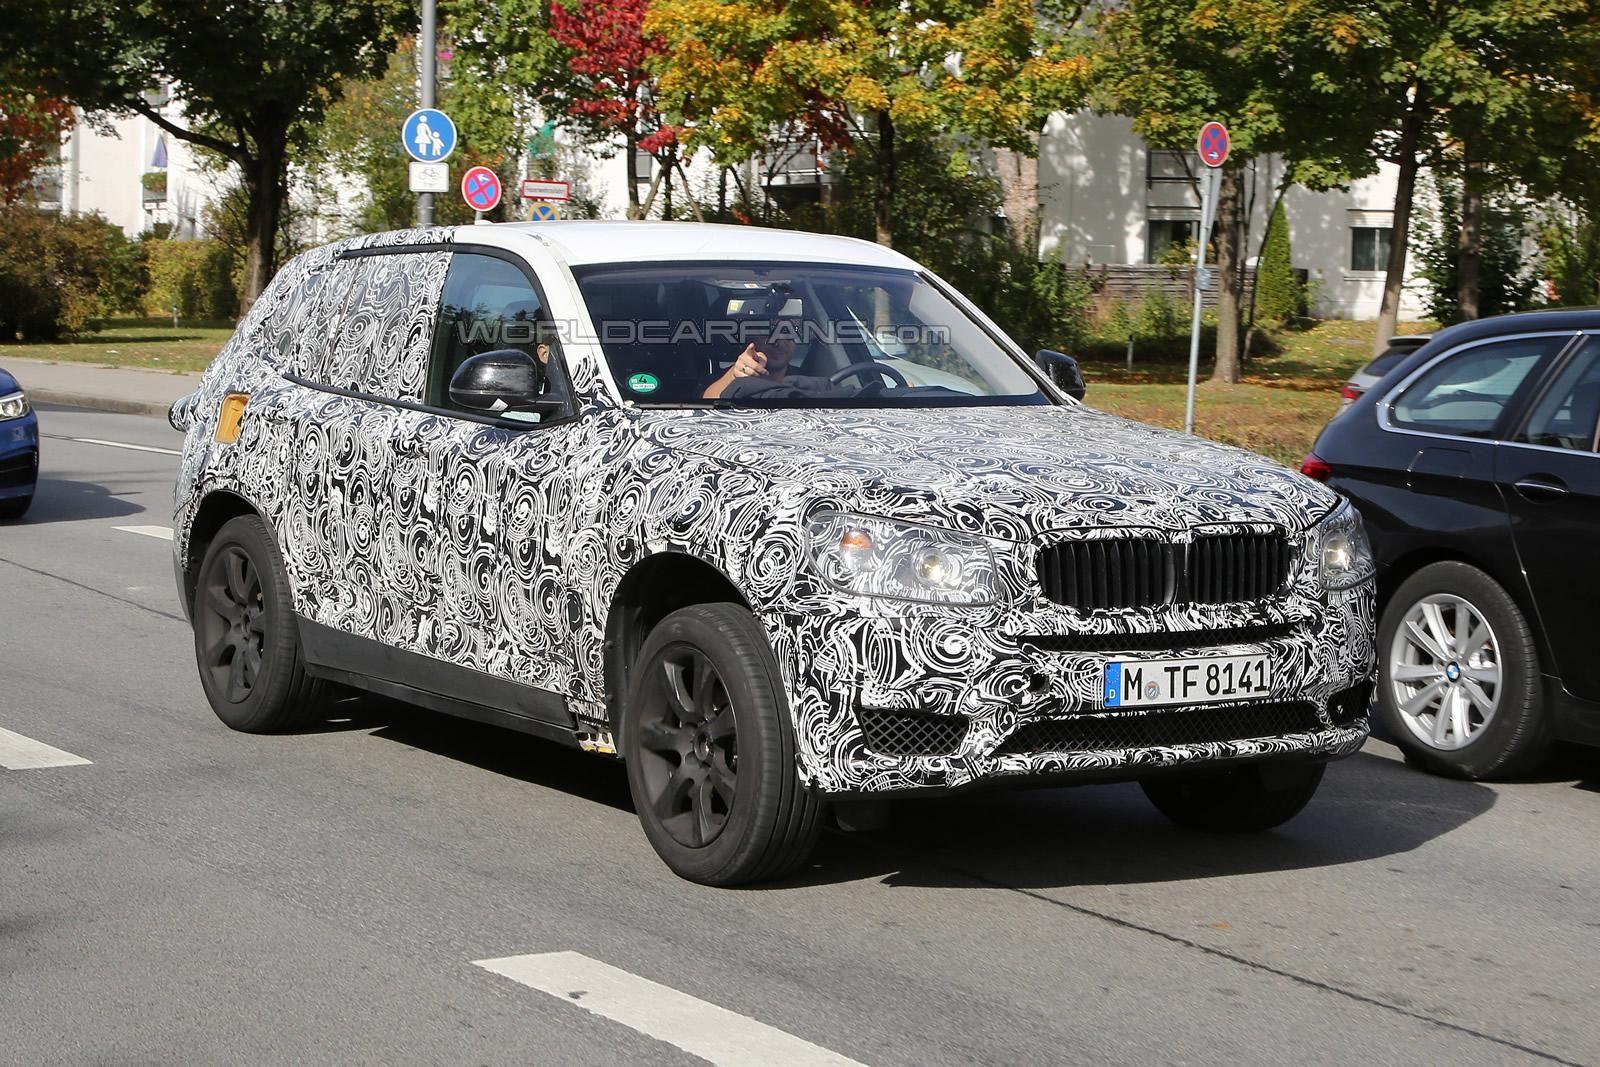 BMW X3 M Spy Shots Revealed